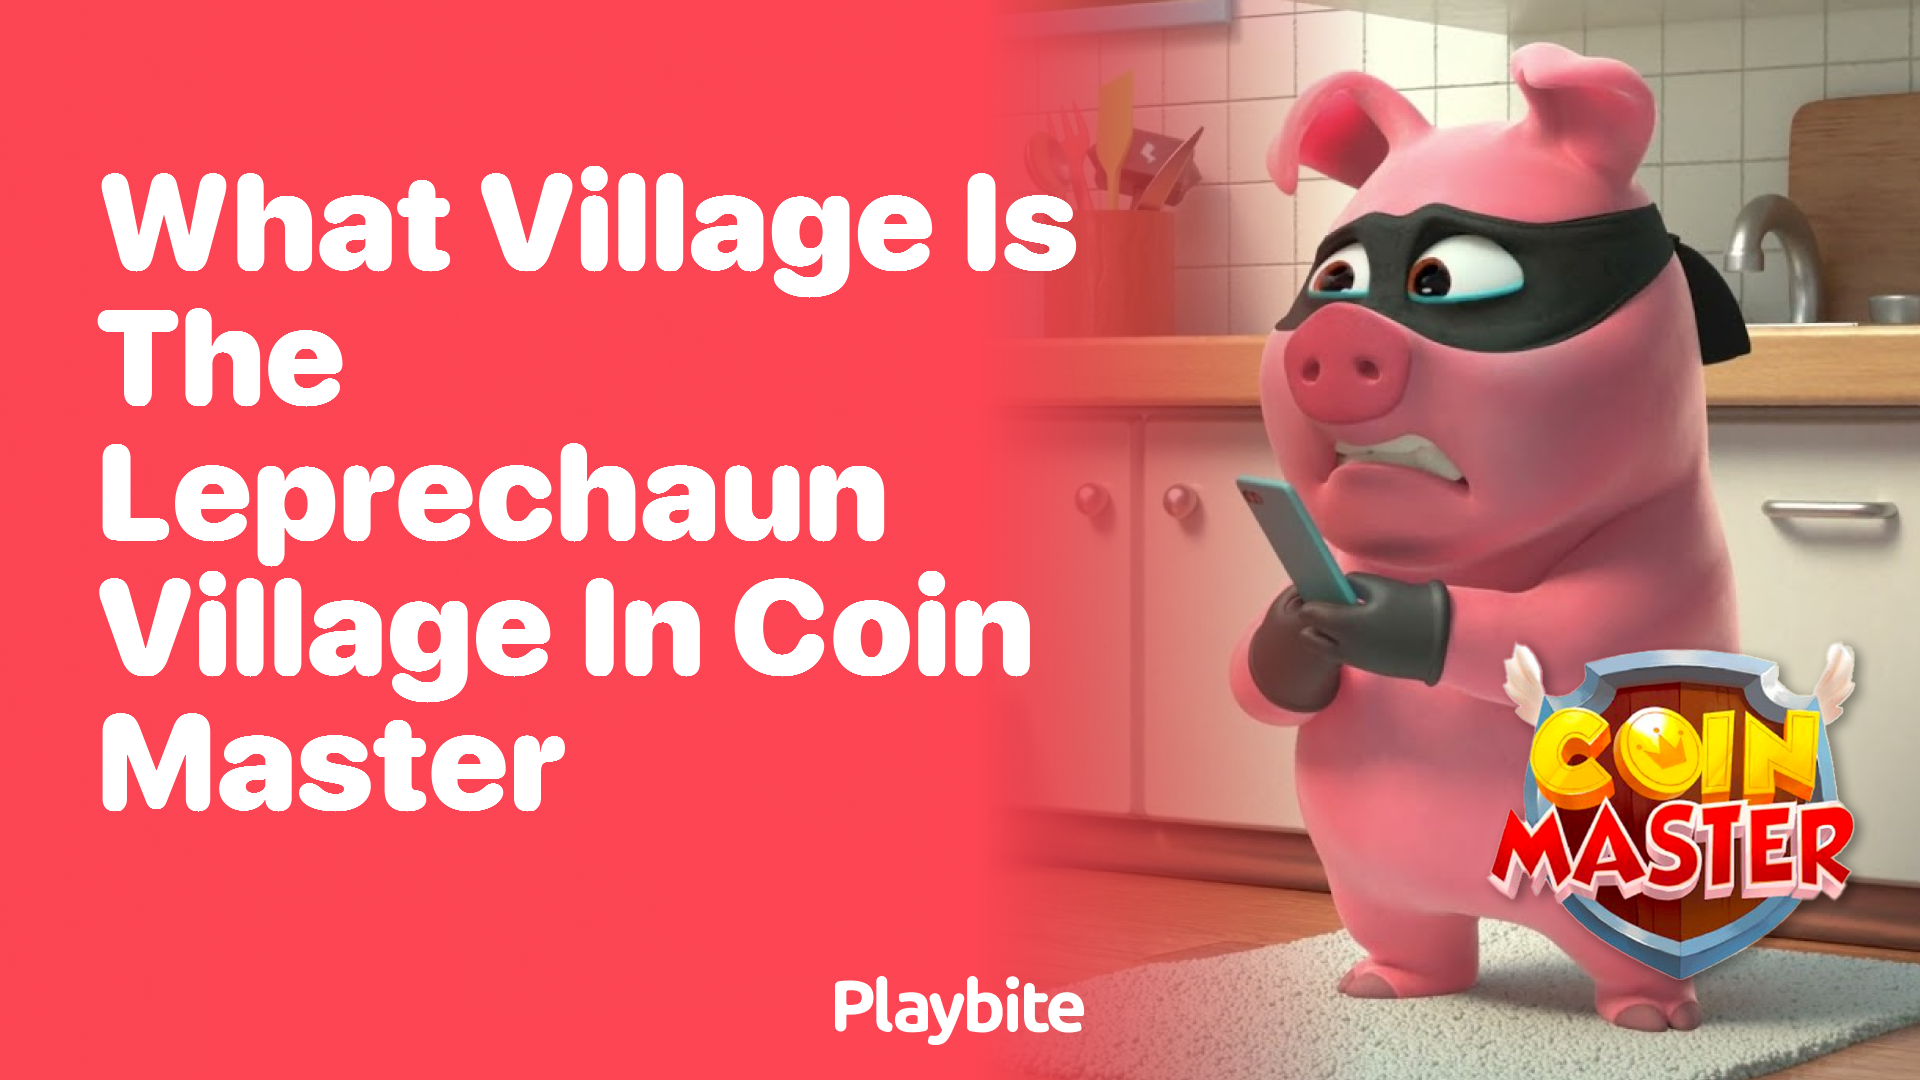 What Village is the Leprechaun Village in Coin Master?